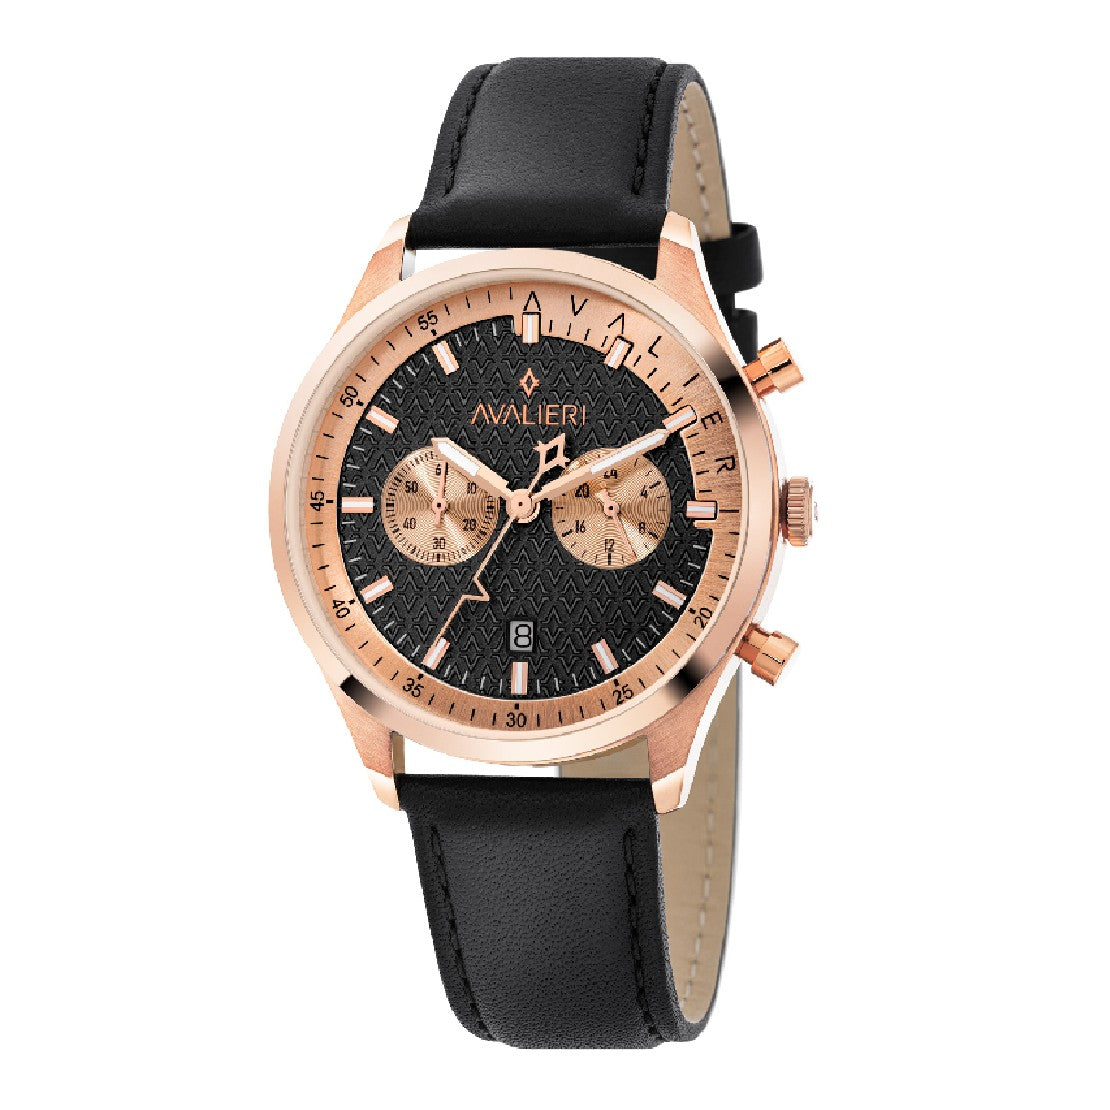 Avalieri Men's Quartz Black Dial Watch - AV-2368B